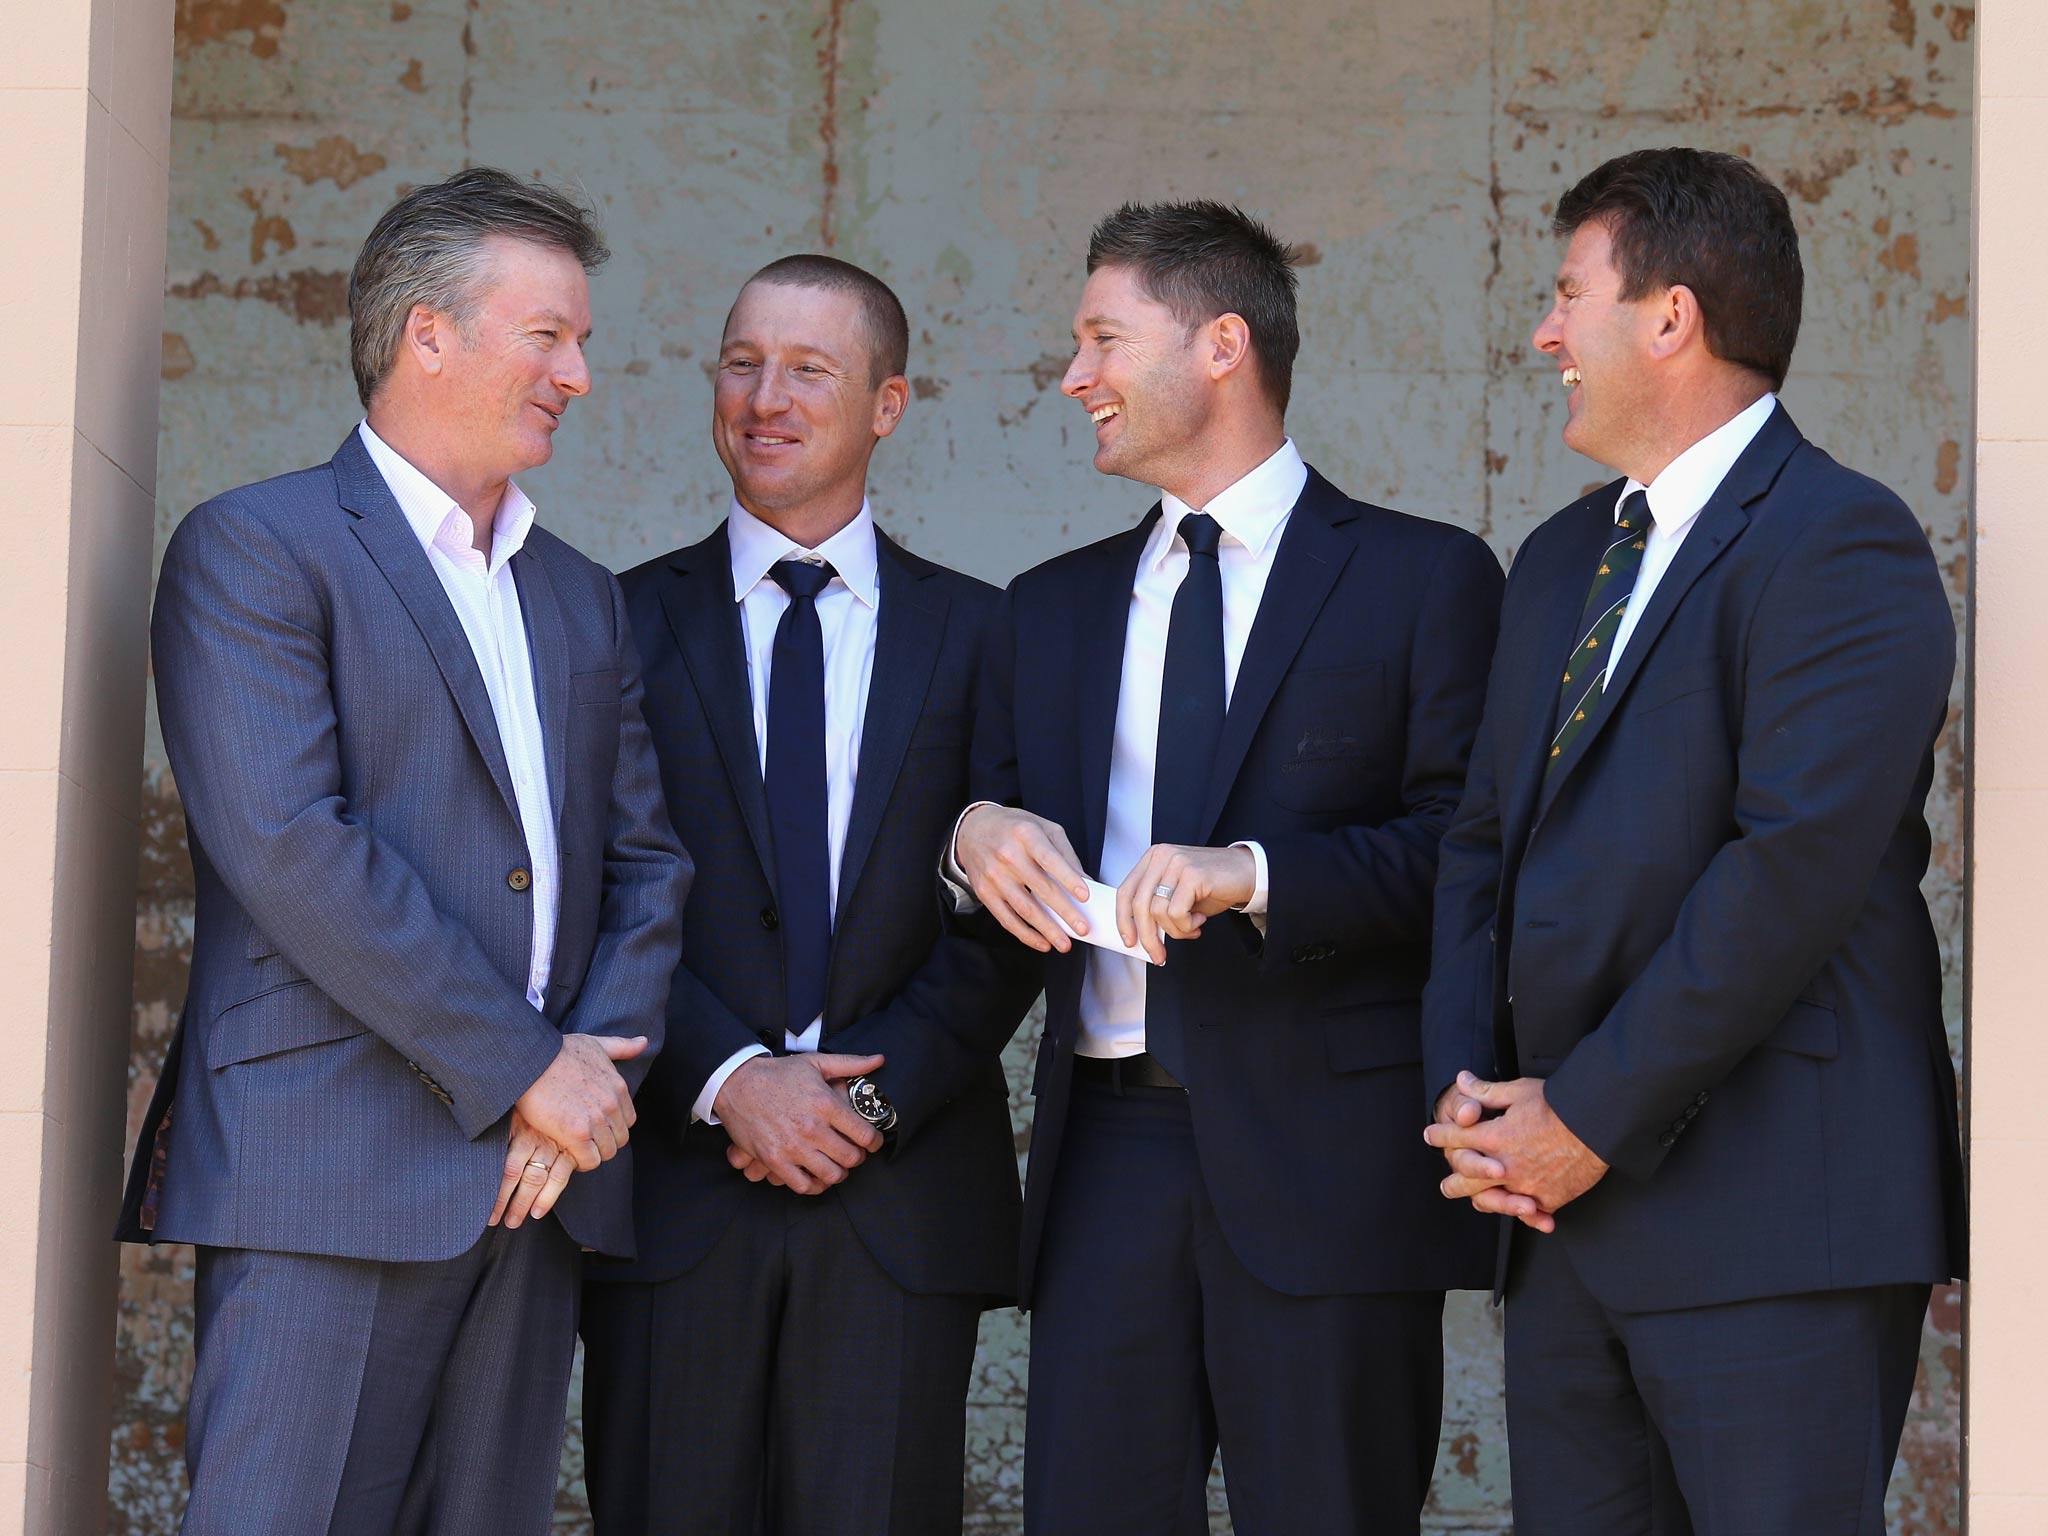 Former Australian captain Steve Waugh, Brad Haddin of Australia, Australian captain Michael Clarke, and former Australian captain Mark Taylor